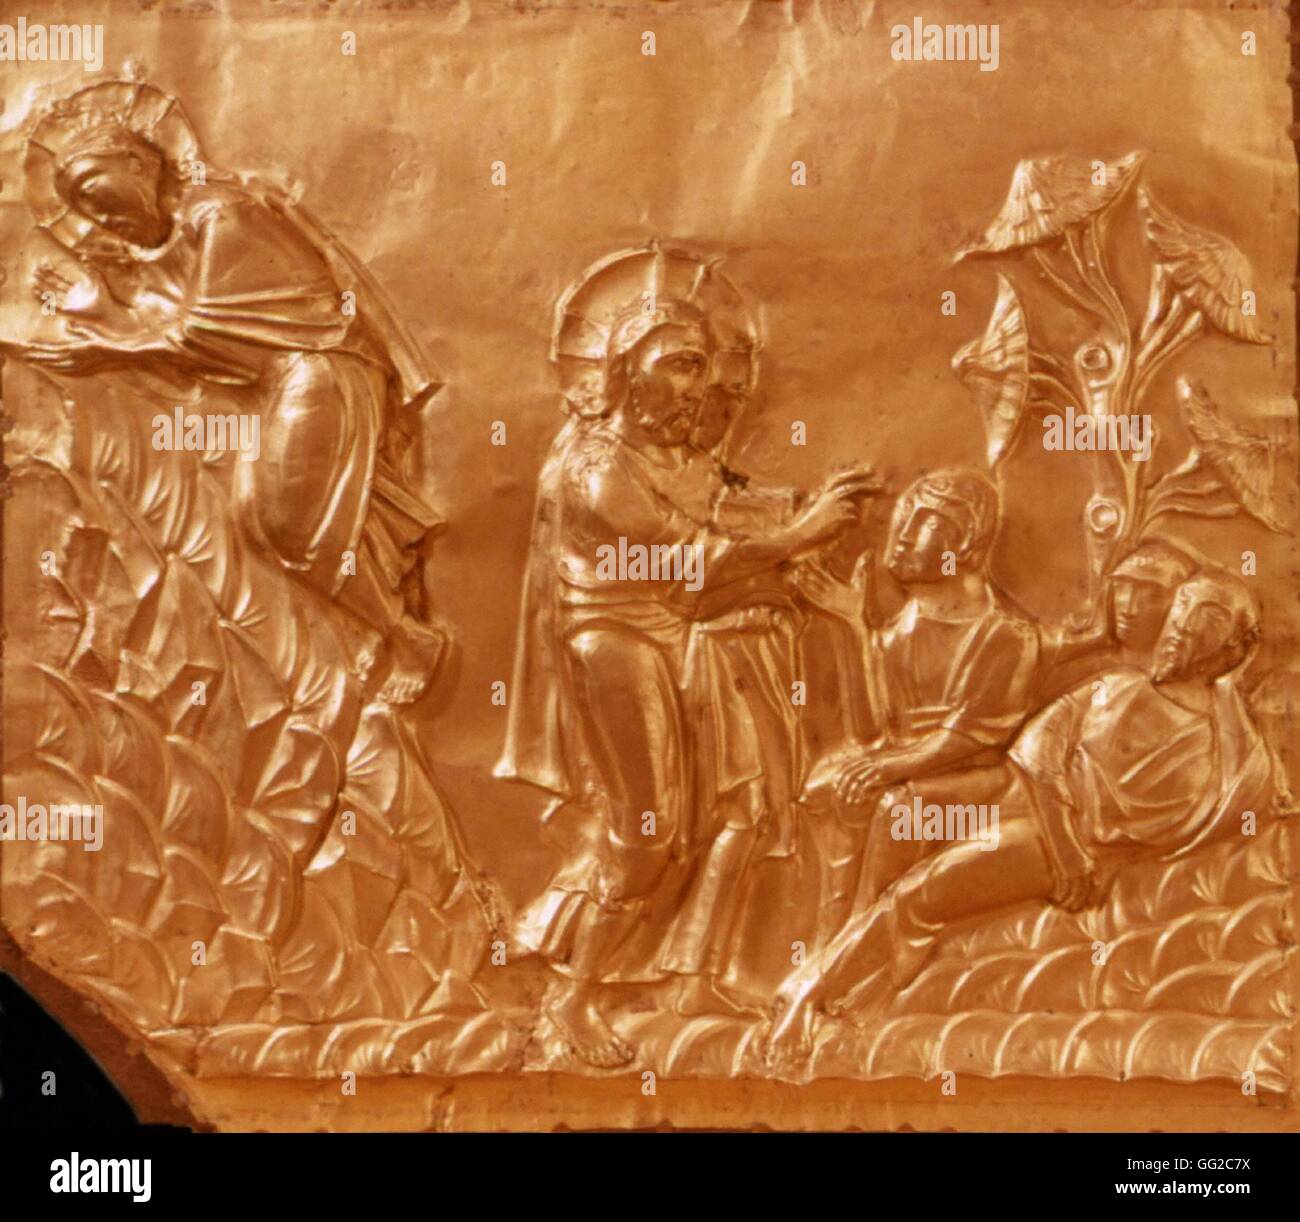 Pala d altare della Cattedrale di Aquisgrana in Germania (Pala d'oro). Dettaglio di una delle scene bibliche della Passione (qui, la benedizione di Cristo). Pala d'oro realizzato tra il 1000 e il 1020 e ha ricevuto come un dono da Otto III. Foto Stock